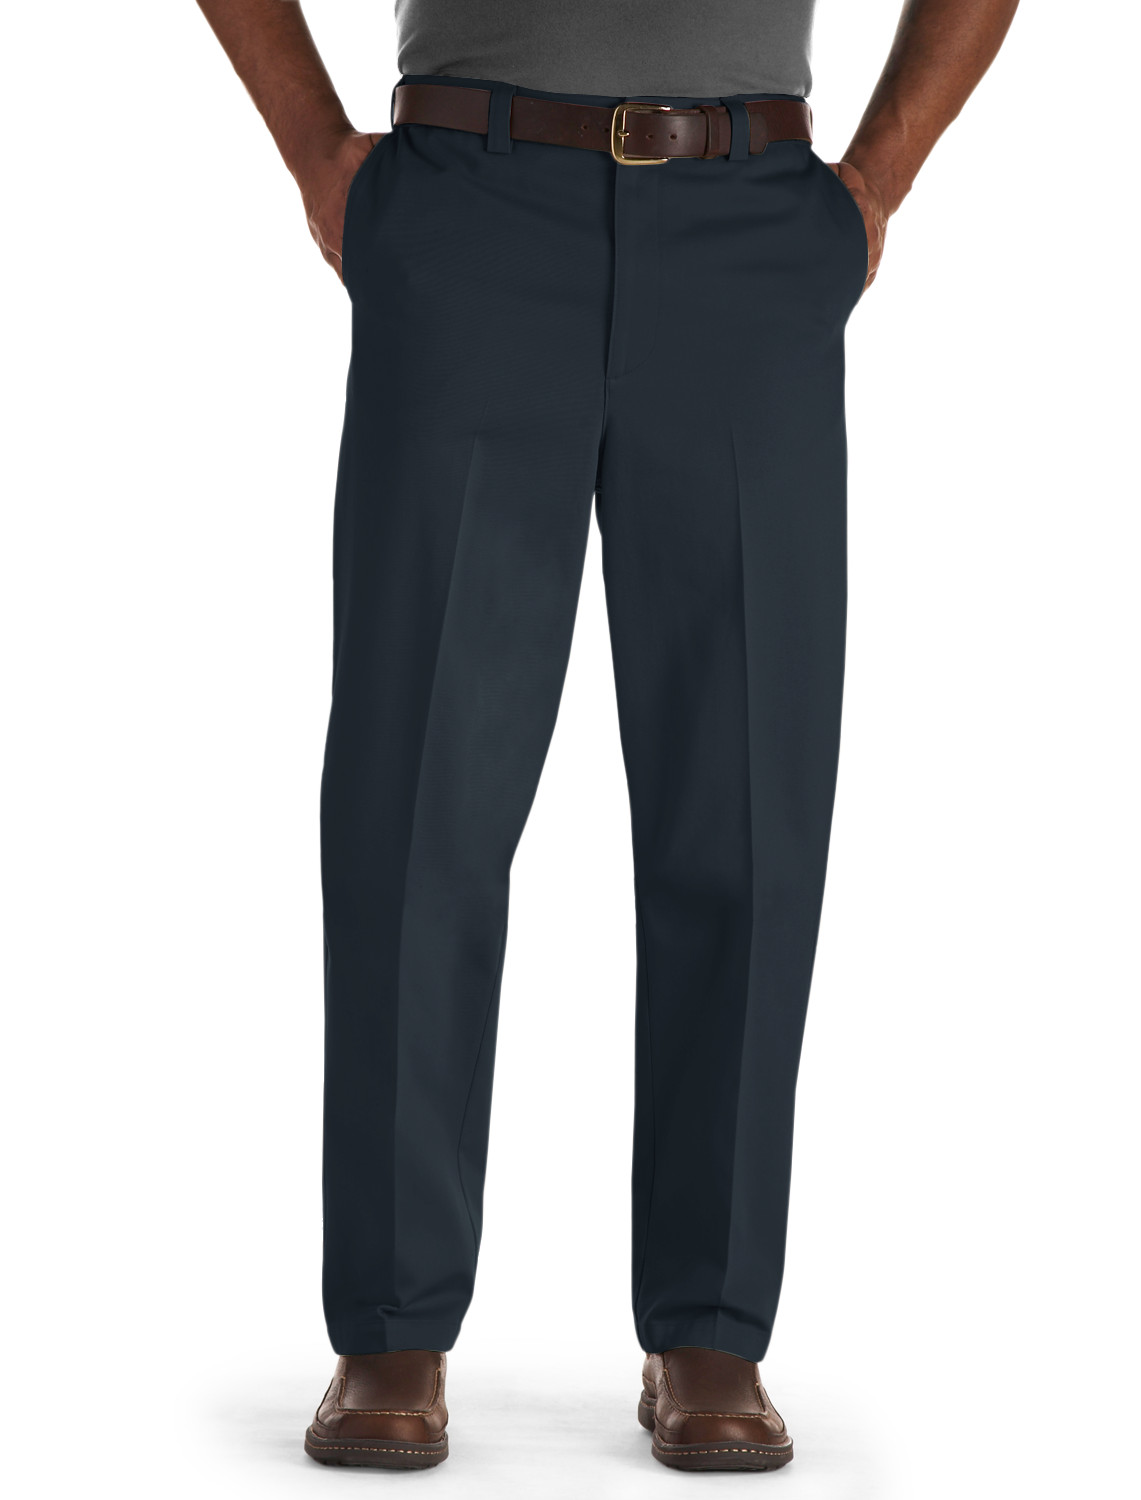 Oak Hill Waist-Relaxer Flat-Front Premium Pants Casual Male XL